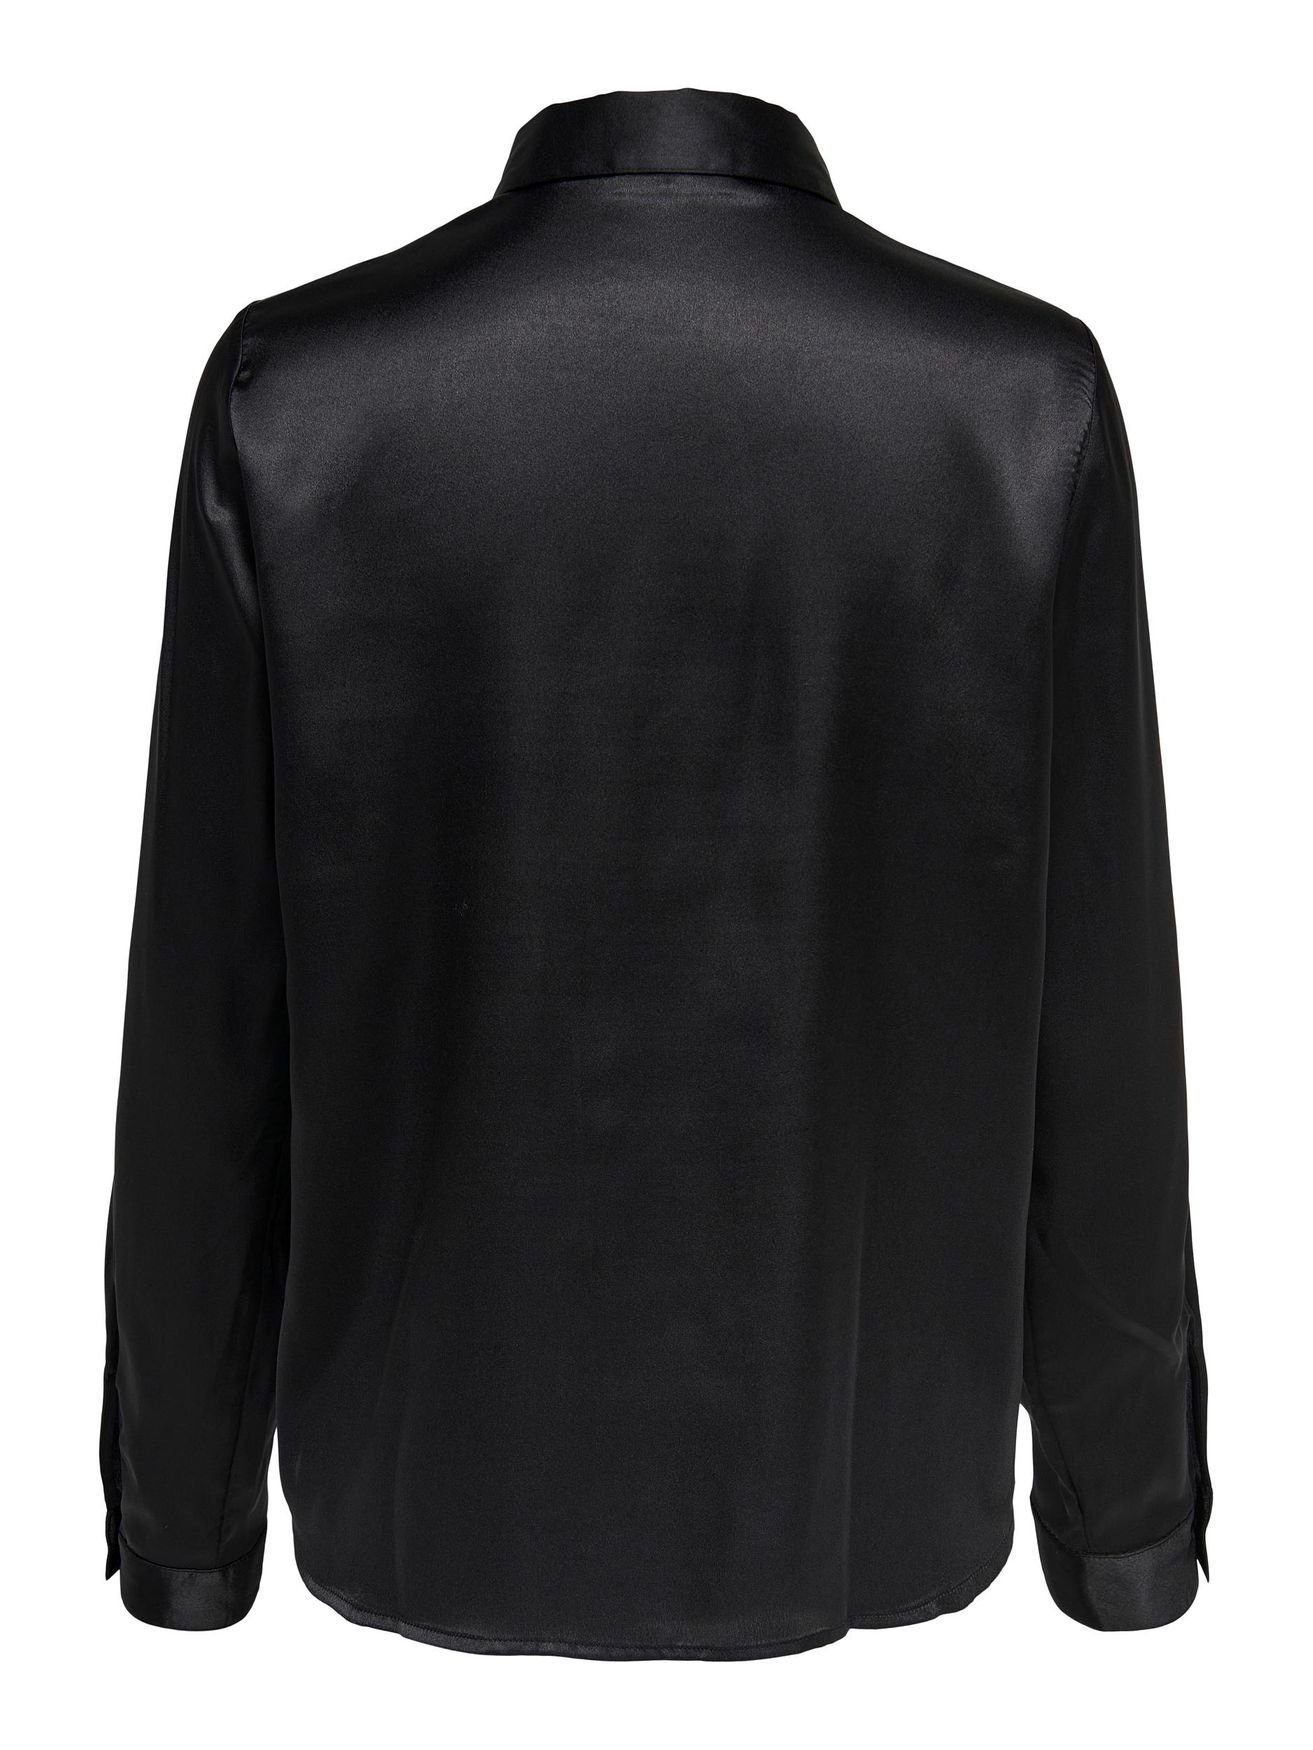 JACQUELINE de YONG 4470 Bluse Tunika Langarm JDYFIFI Satin Elegante in Business Schwarz Hemd Blusenshirt